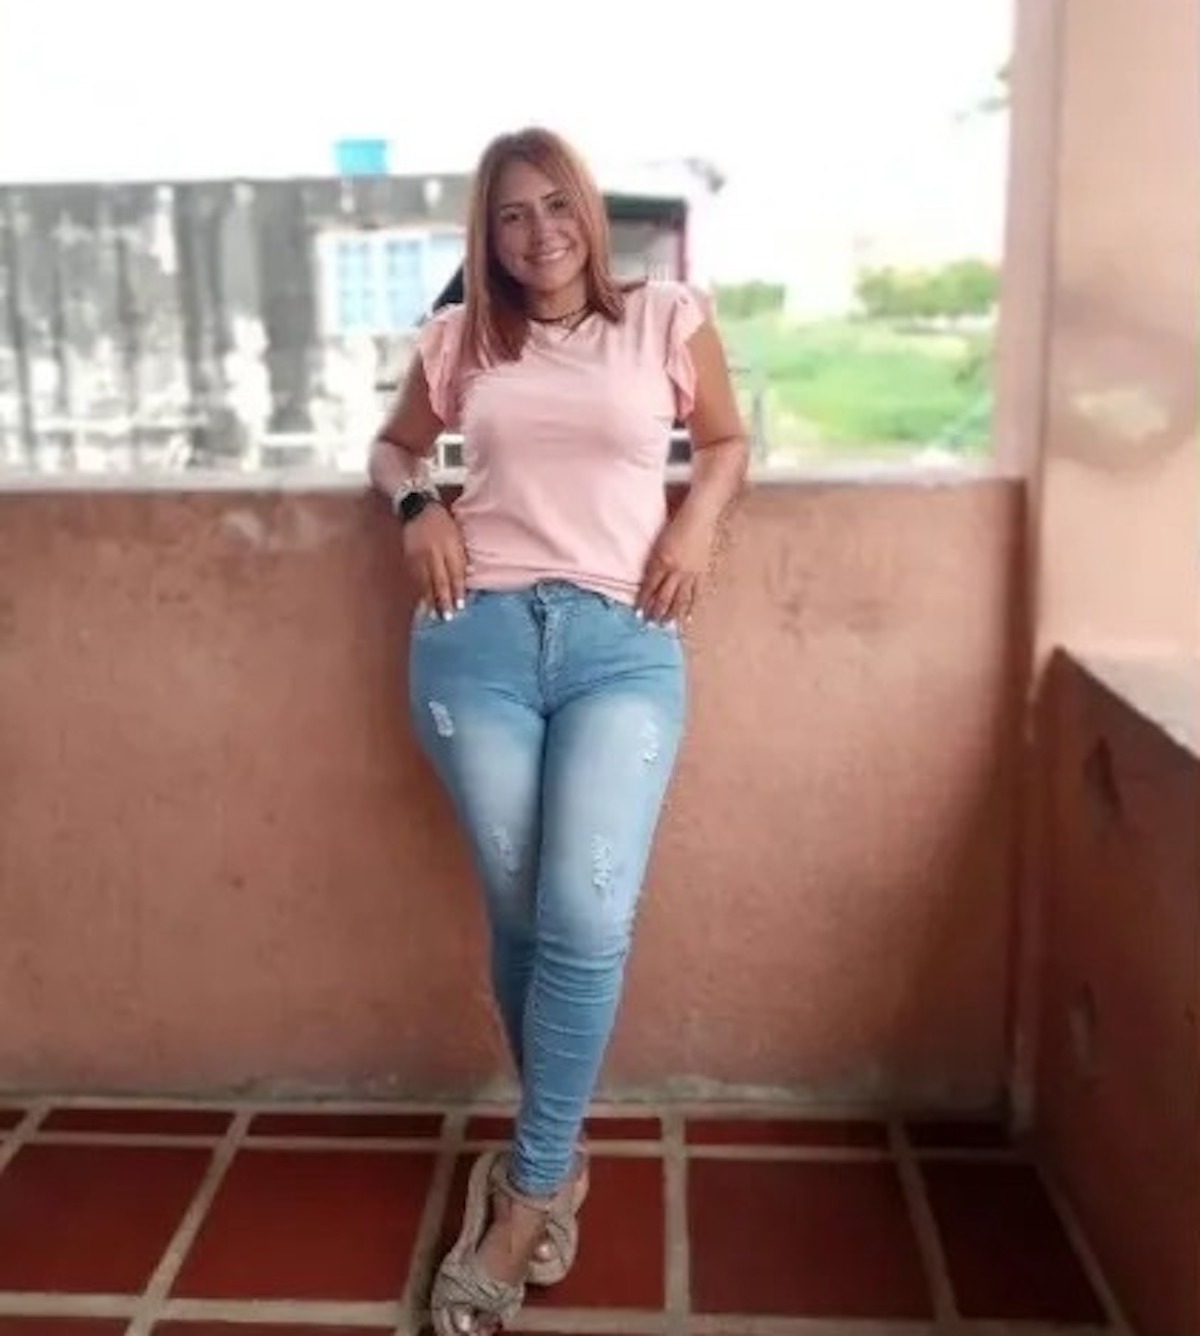 Froilanis Maireth Rivas Román colpita da un fulmine in Colombia, morta a 34 anni 